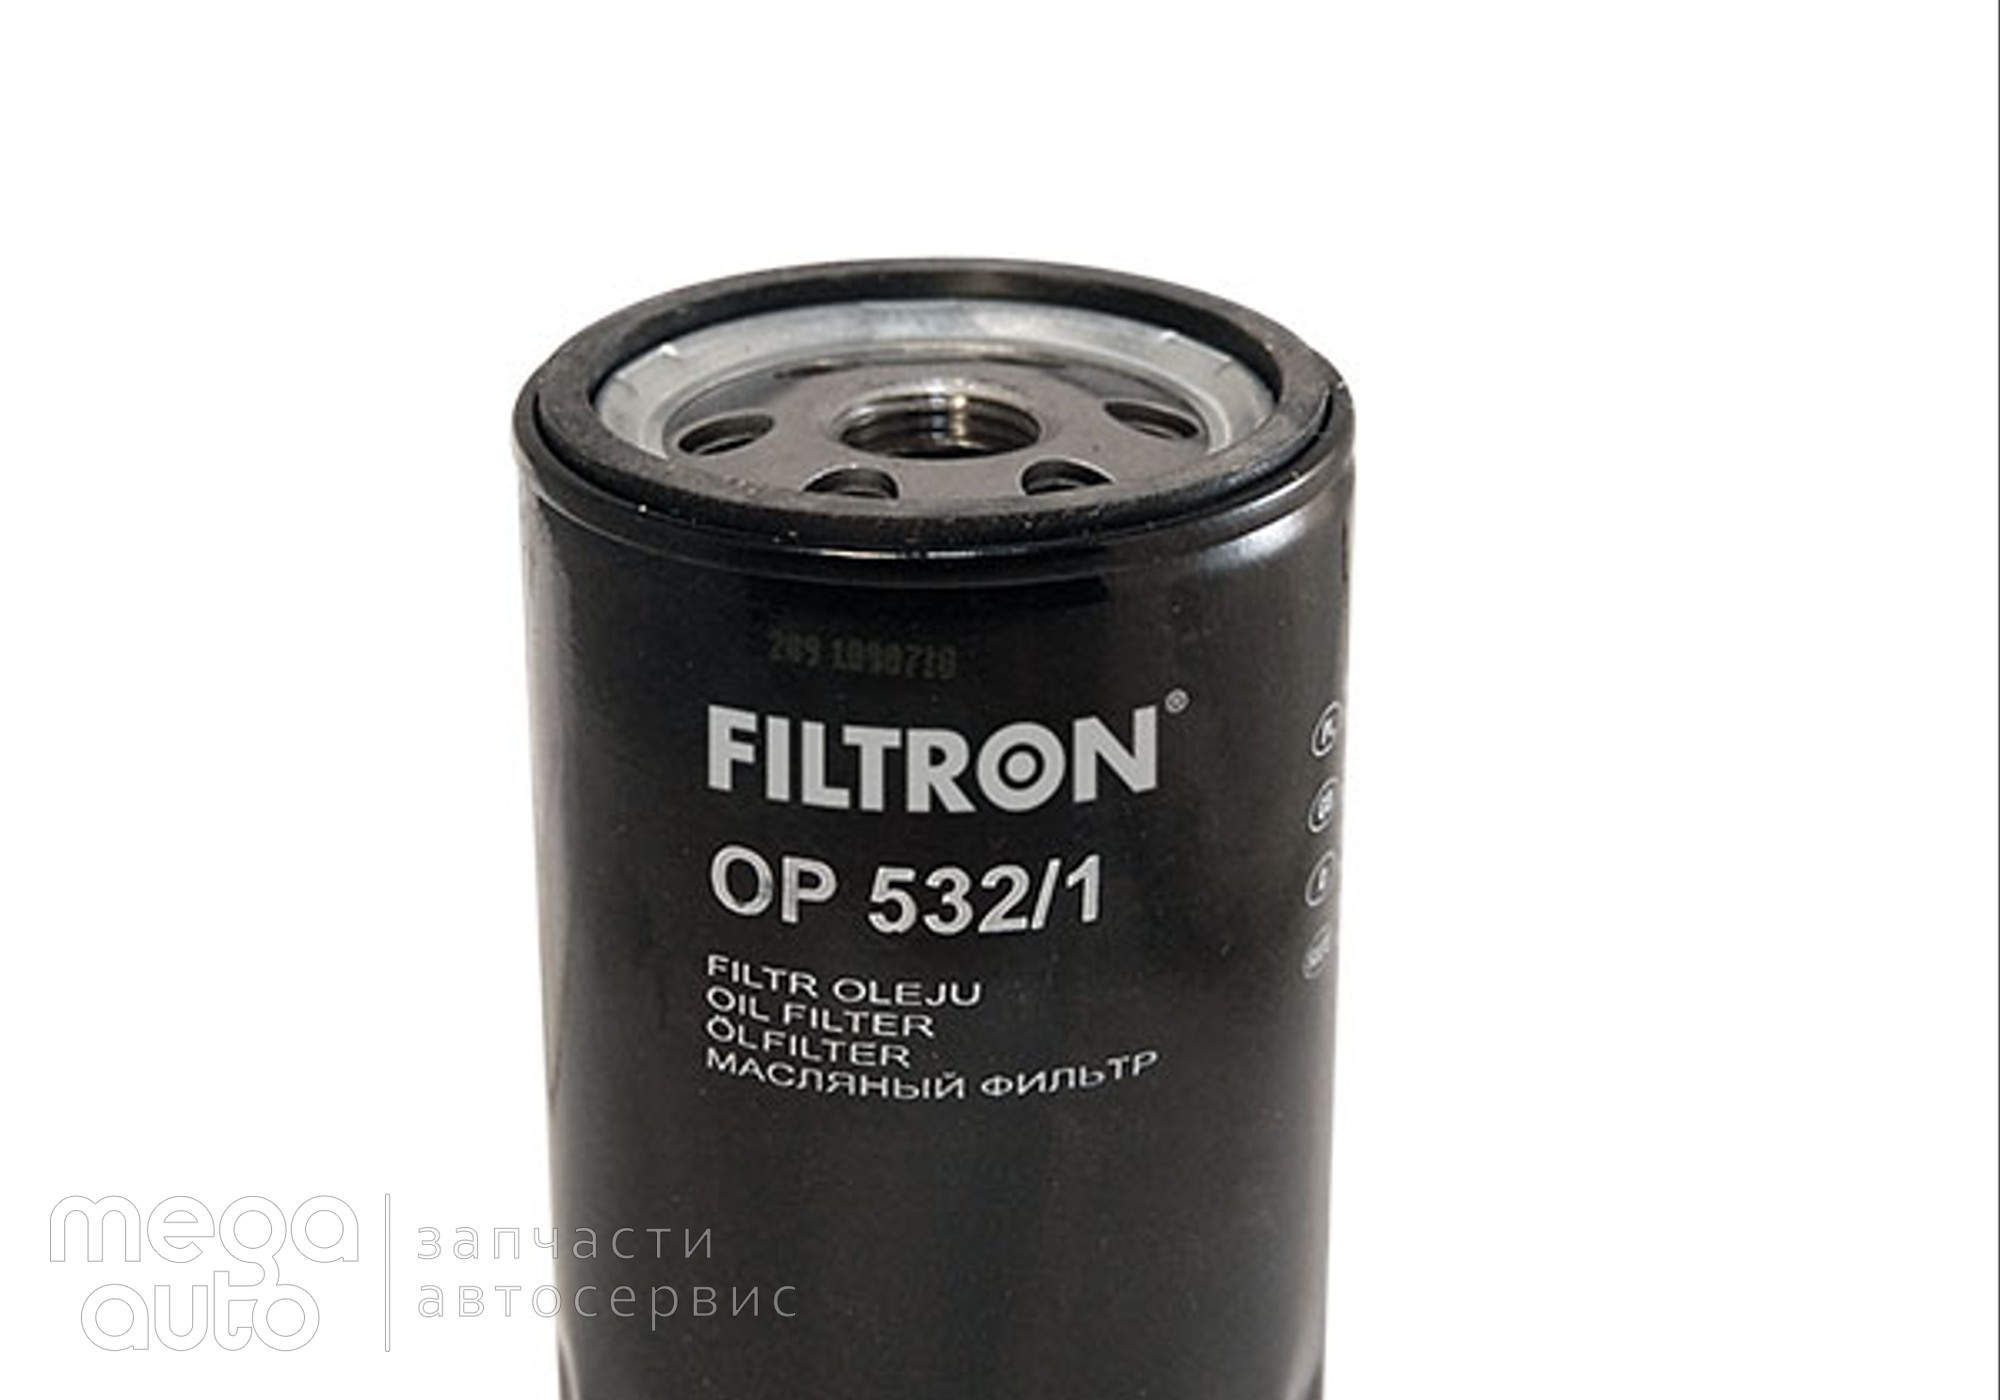 96565412 Масляный фильтр форд мондео, эскорт(Filtron) для Ford Escort